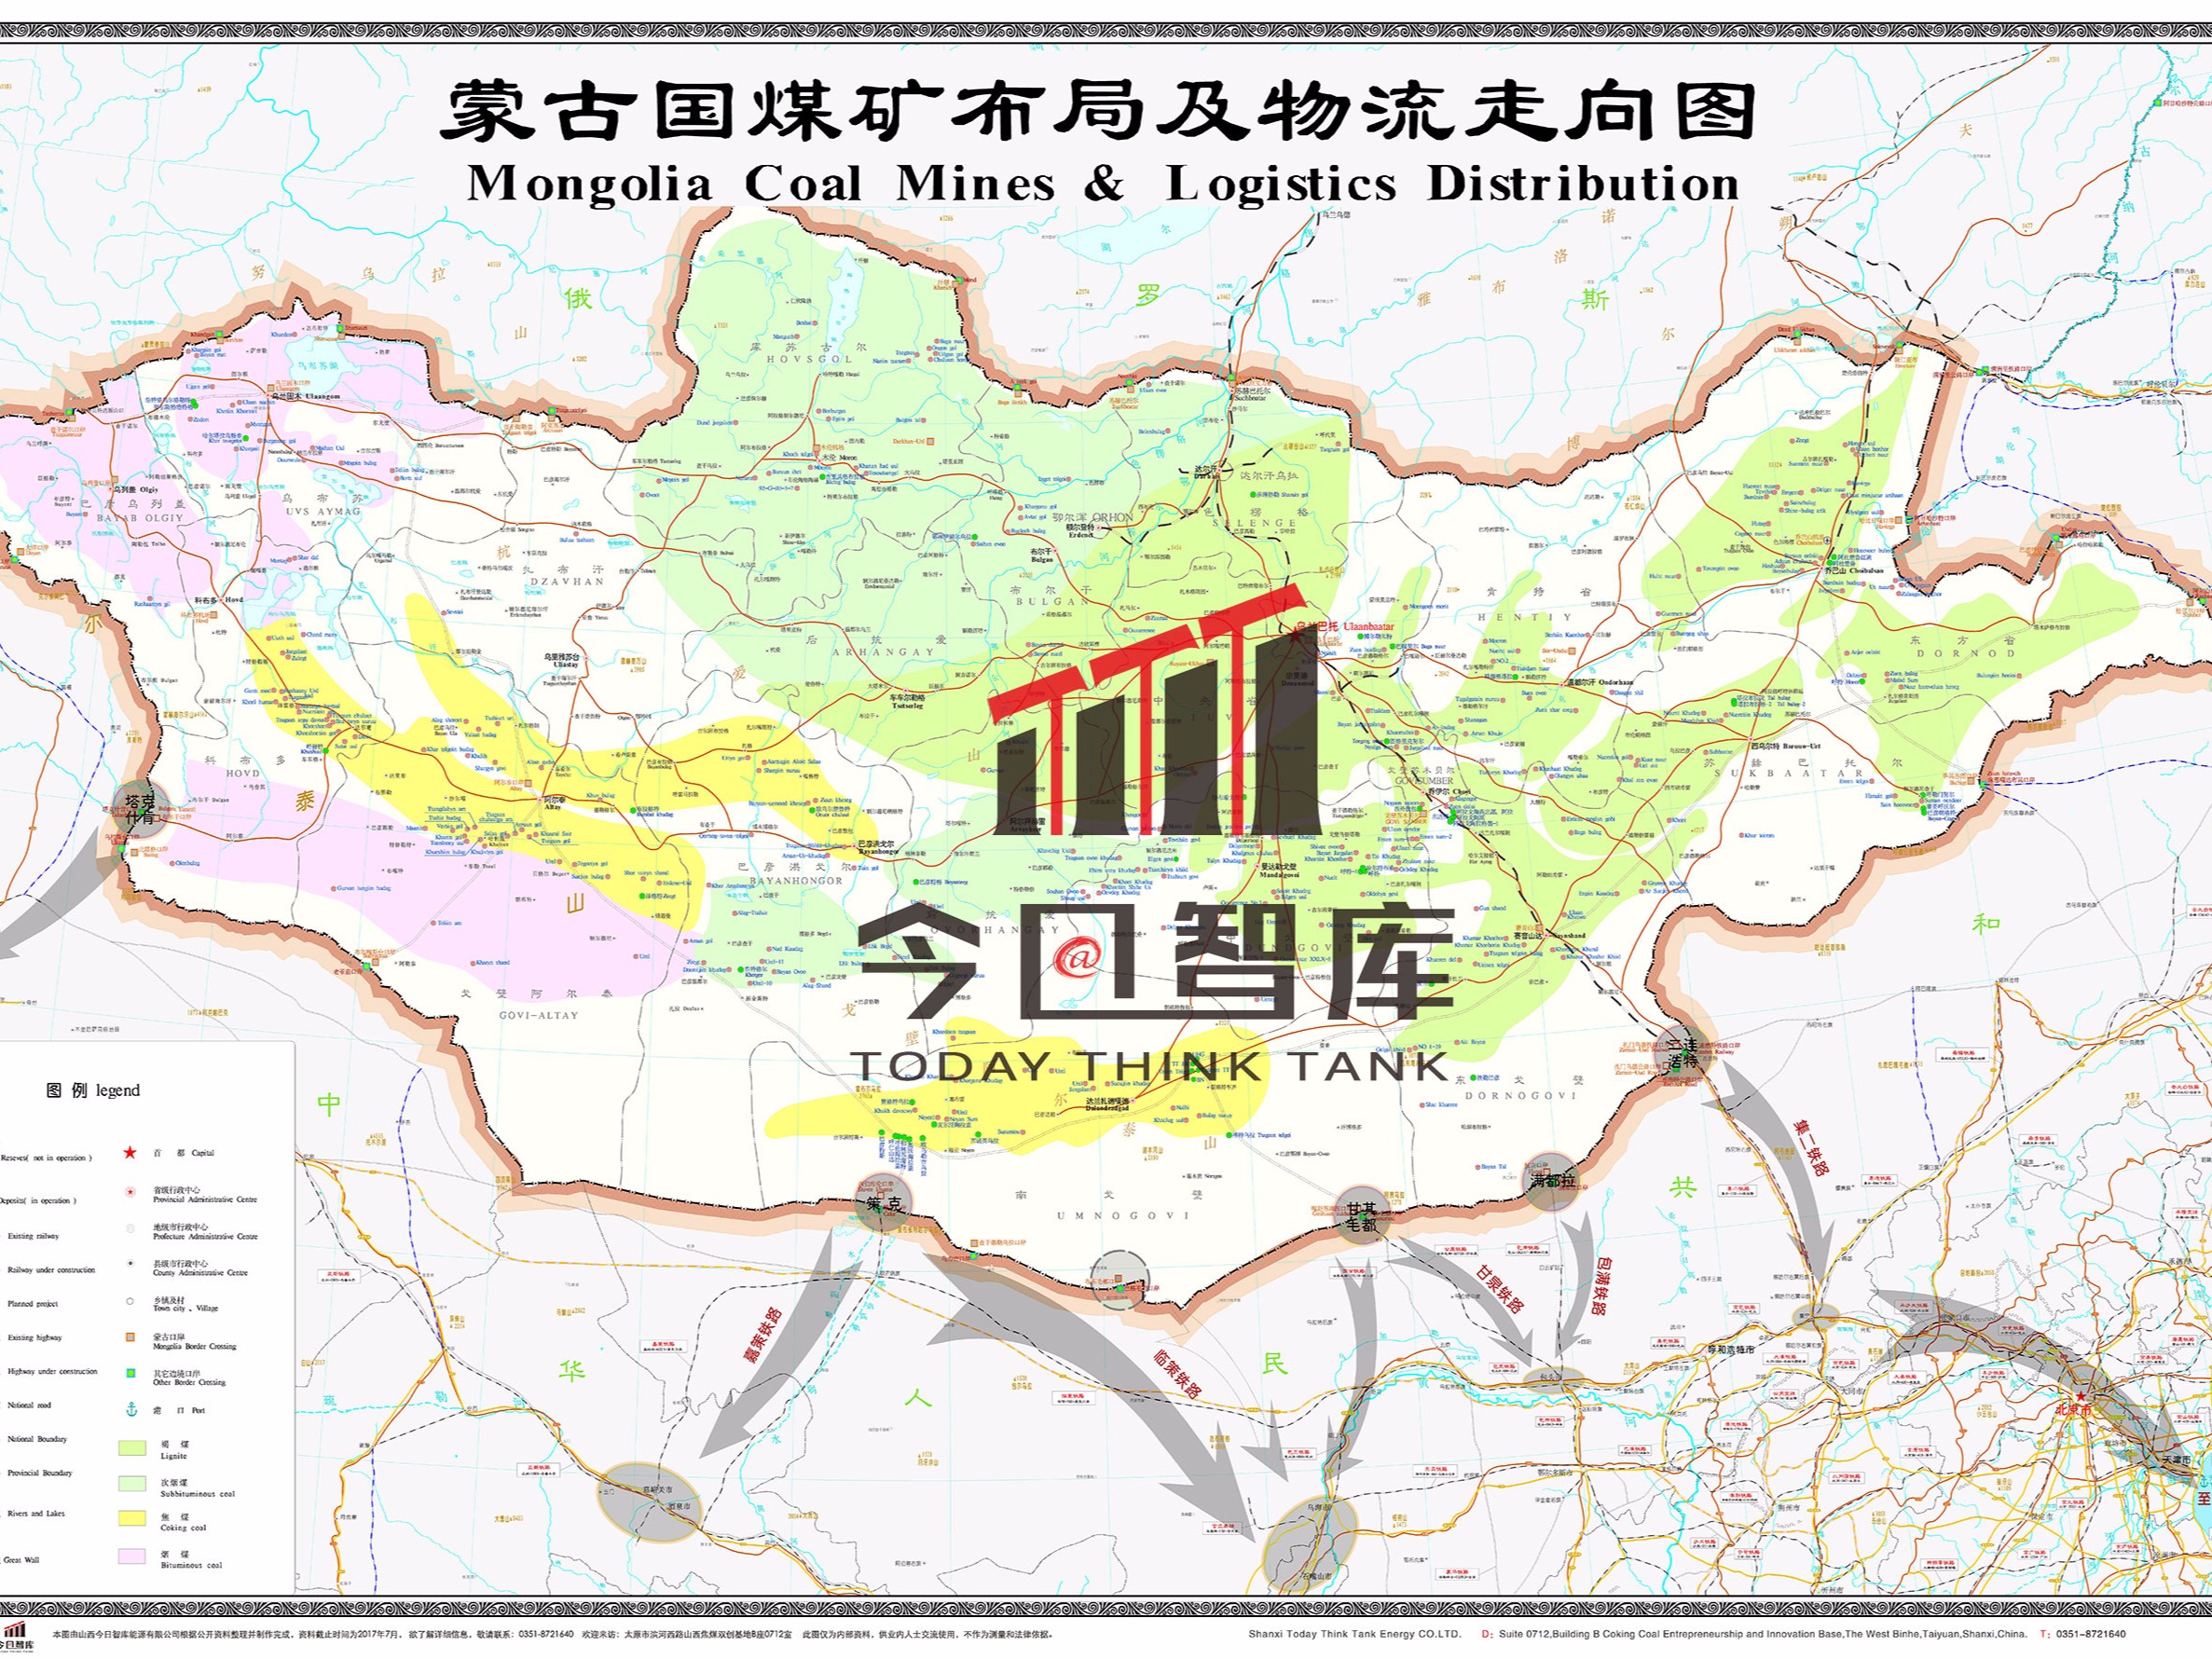 蒙古国煤矿布局及物流走向图